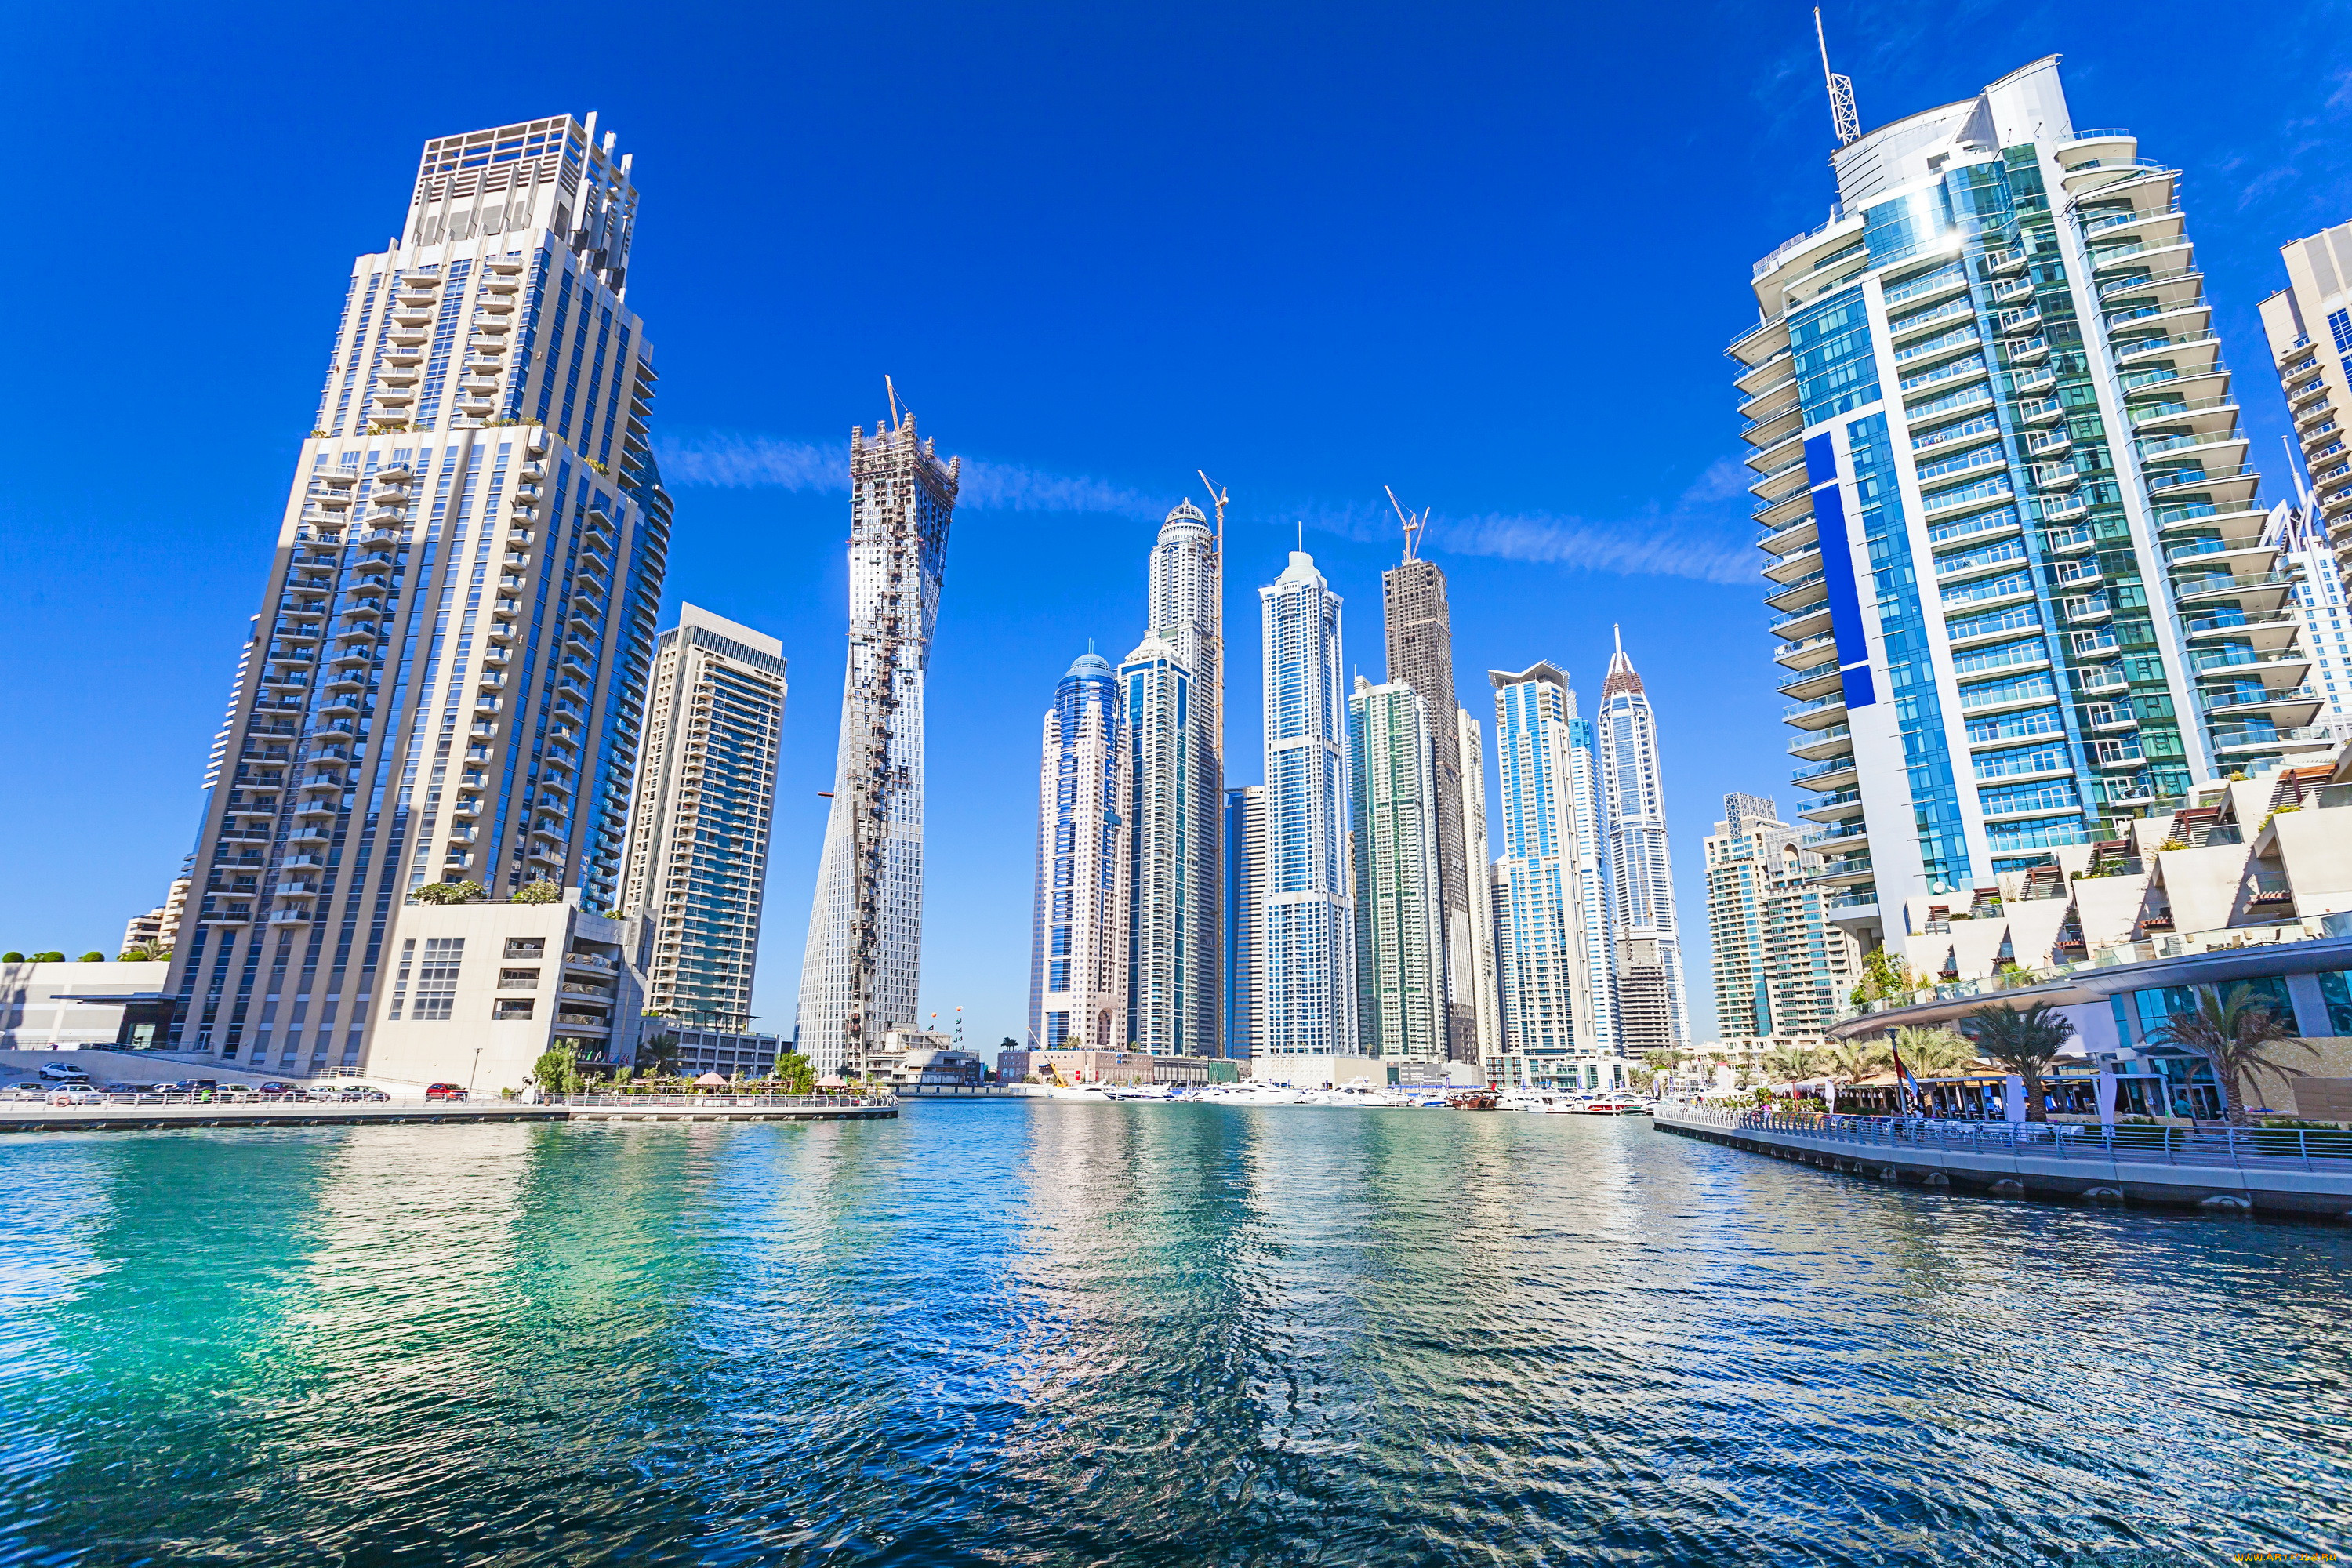 Обои Дубаи Города Дубай (ОАЭ), обои для рабочего стола, фотографии дубаи,  города, дубаи , оаэ, дома, море, небоскребы Обои для рабочего стола,  скачать обои картинки заставки на рабочий стол.